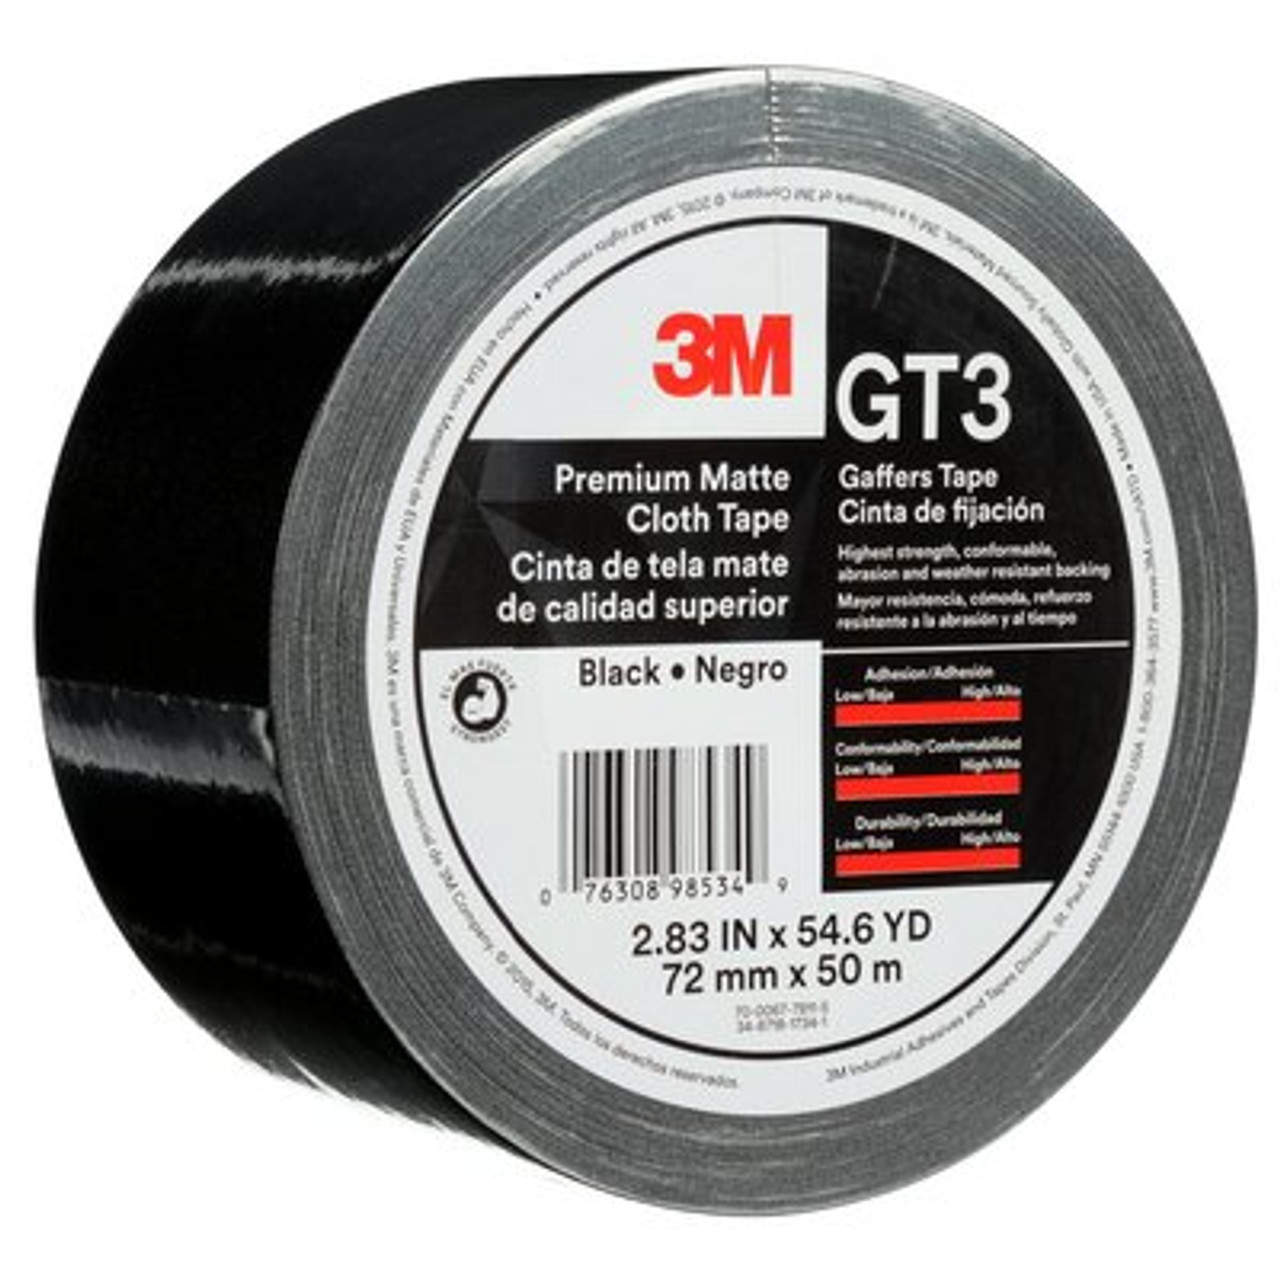 3M™ Premium Matte Cloth (Gaffers) Tape GT3, Black, 72 mm x 50 m, 11 mil